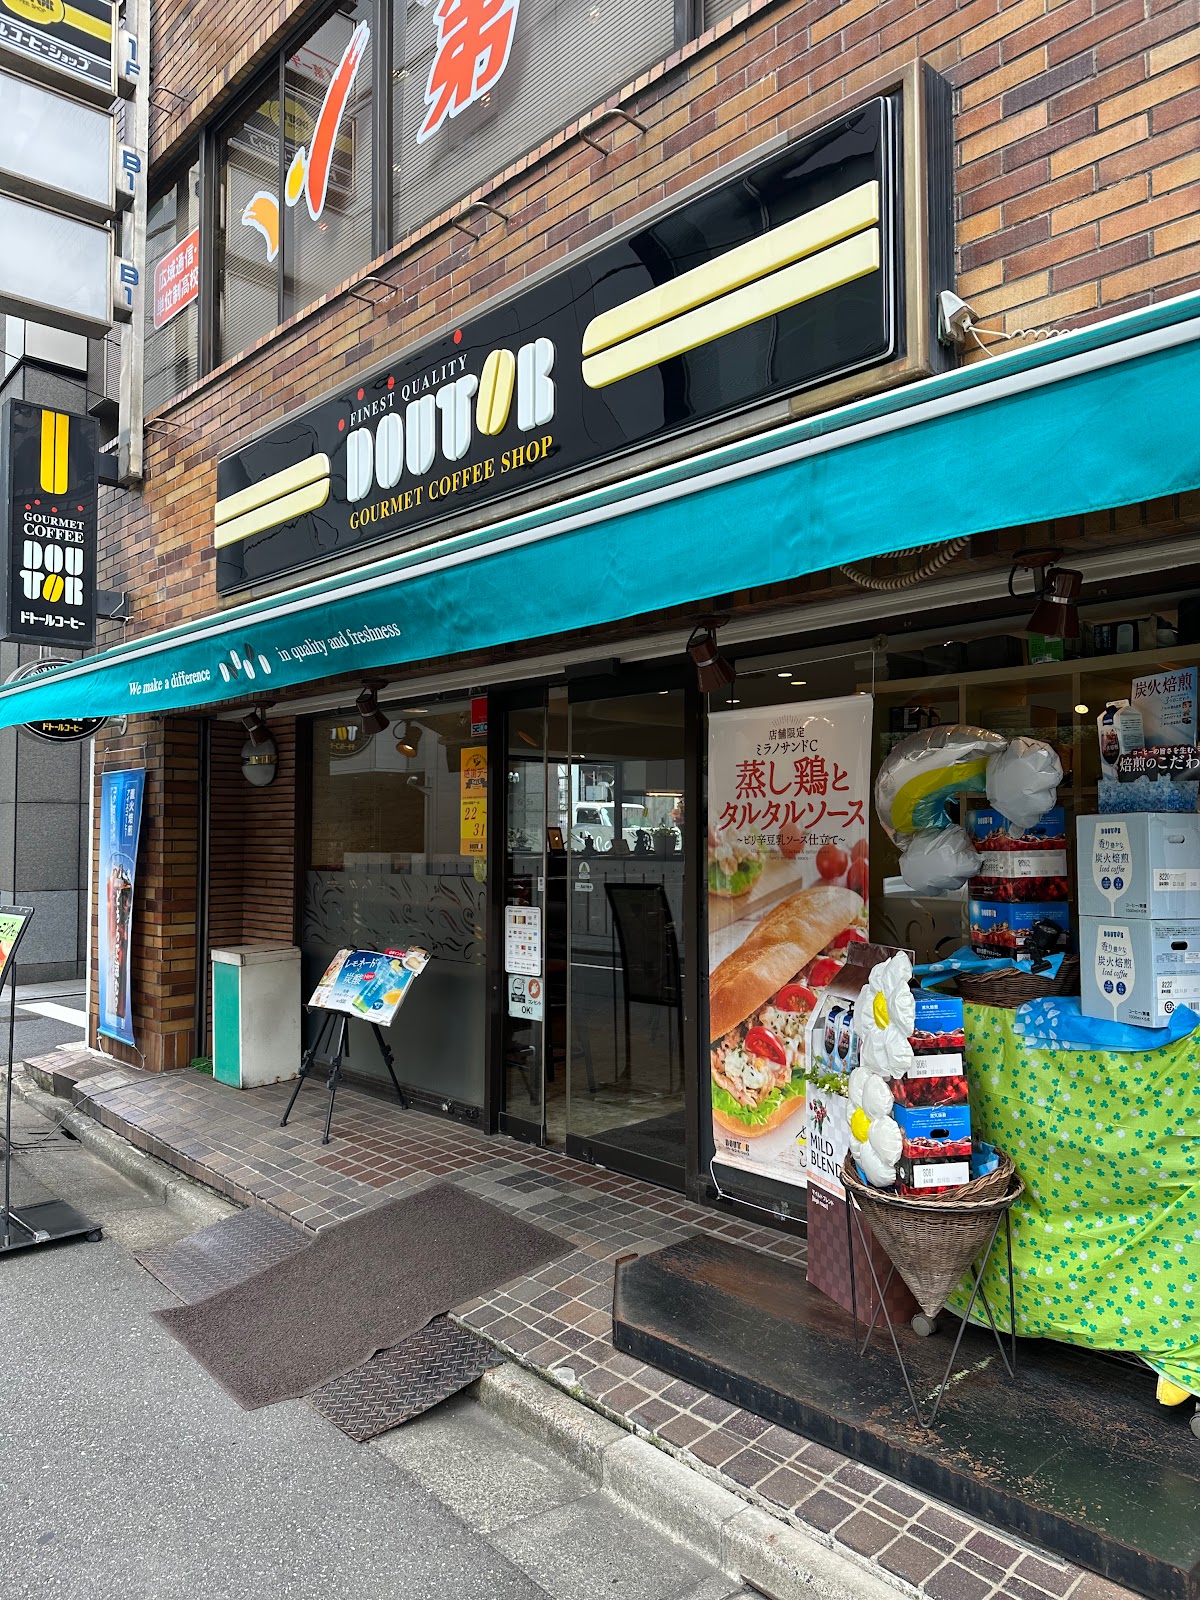 ドトールコーヒーショップ 神田和泉町店の風景